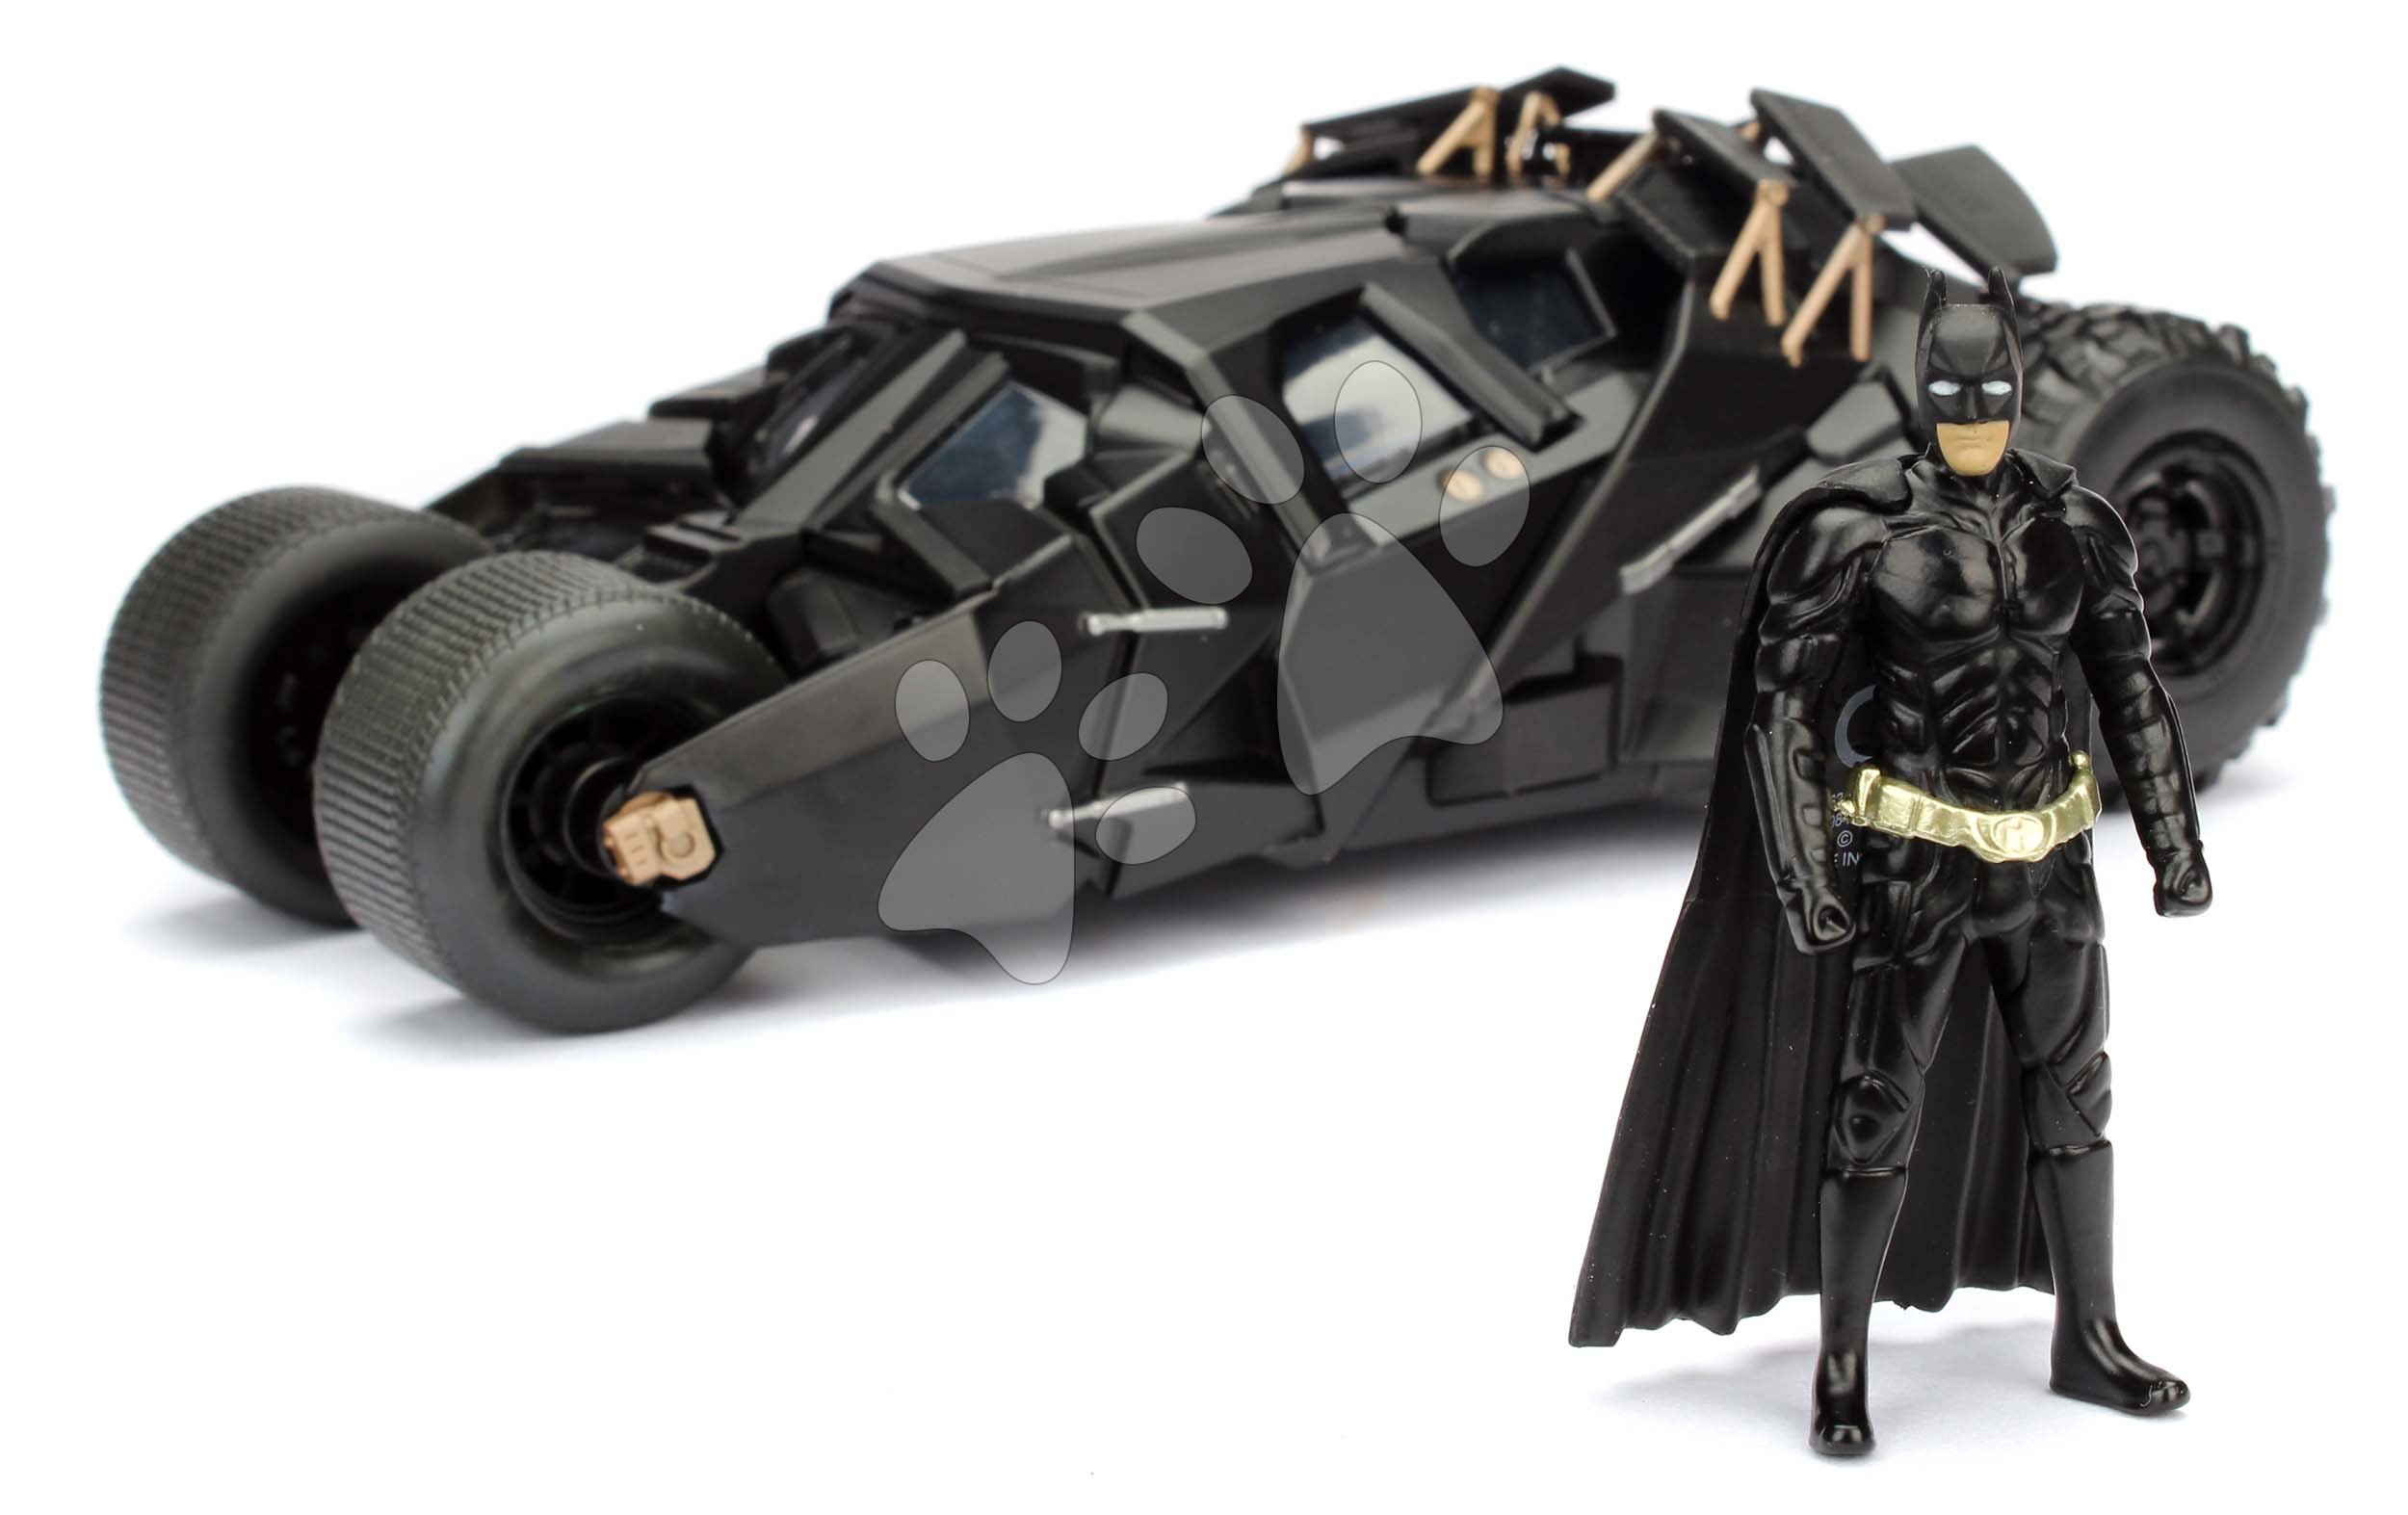 Kisautó Batman The Dark Knight Batmobile Jada fém nyitható pilótafülkével és Batman figurával hossza 20,5 cm 1:24